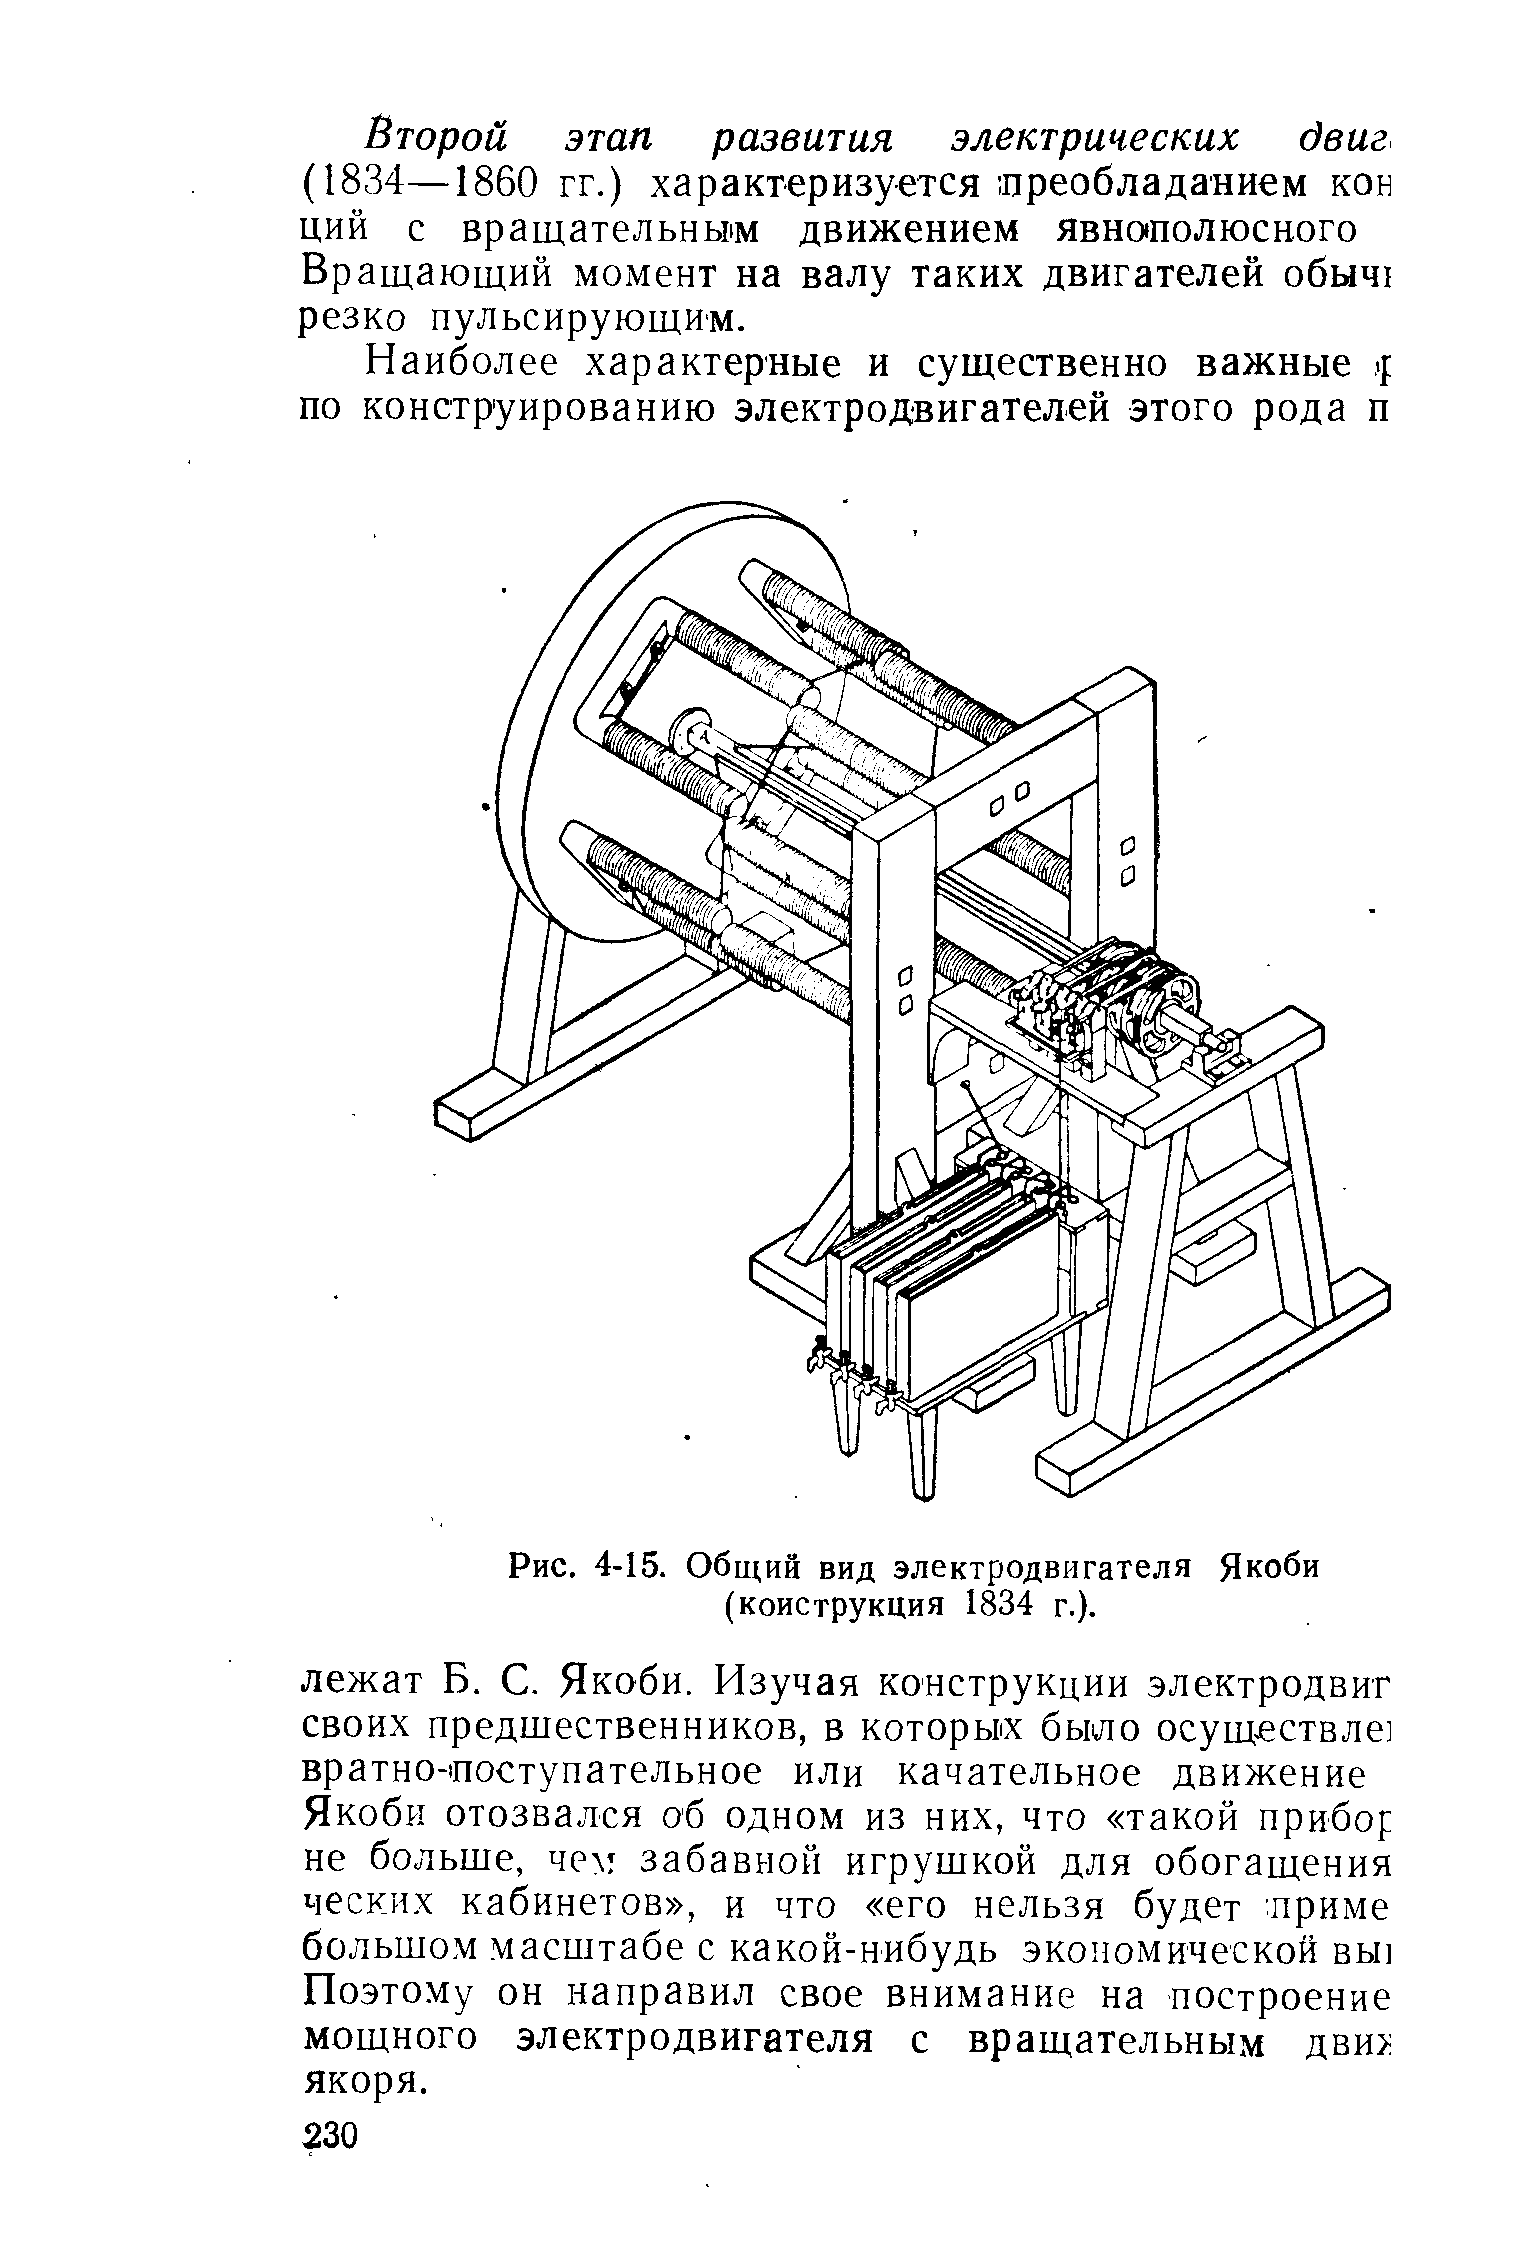 Рис. 4-15. Общий вид электродвигателя Якоби (конструкция 1834 г.).
